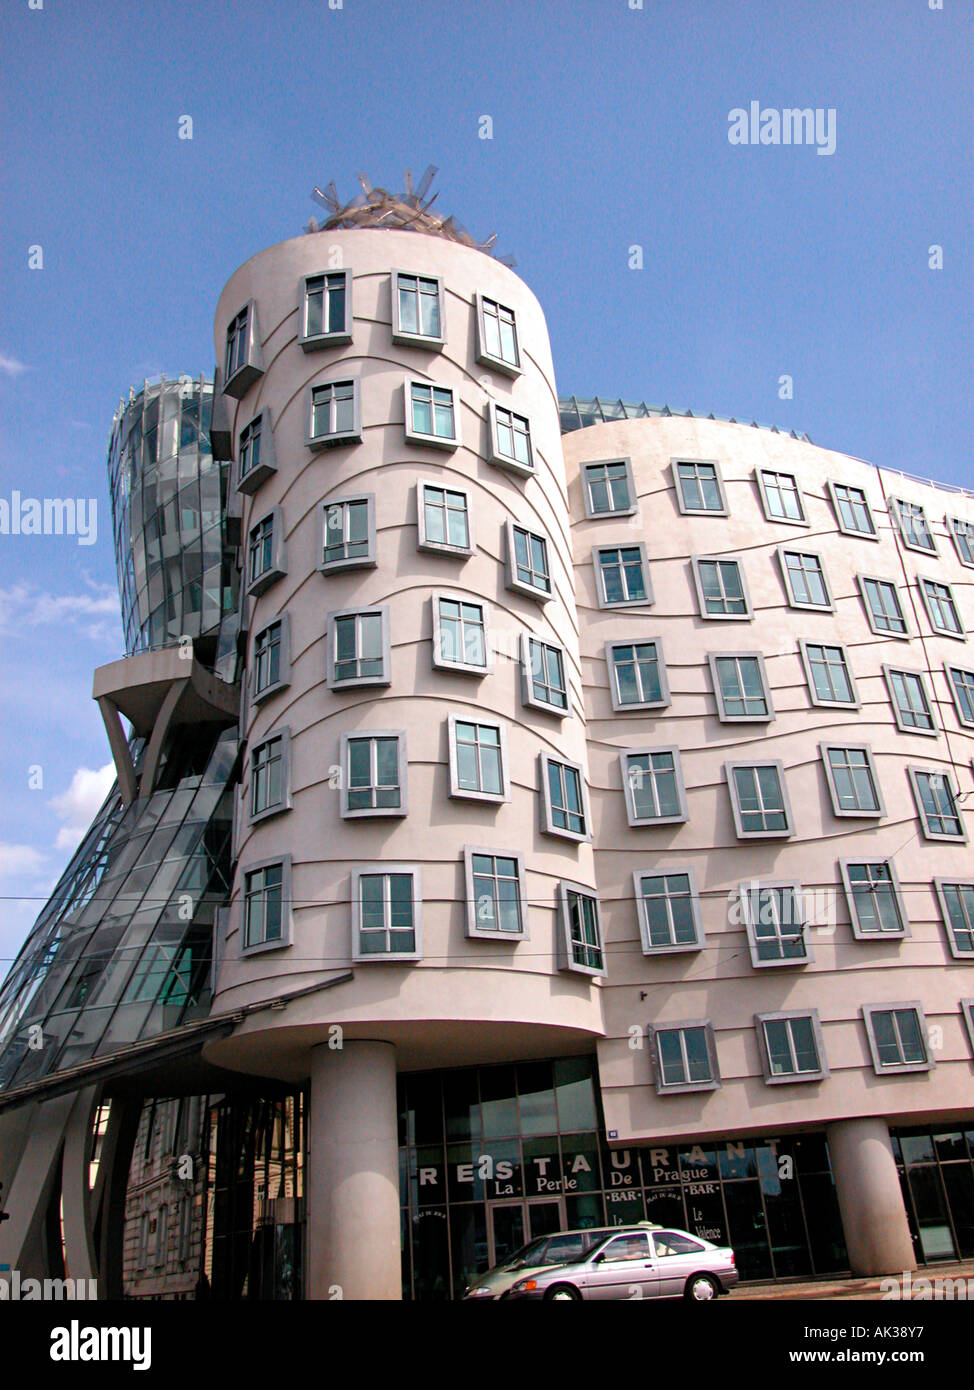 Il Rasin Building di Frank Gehry, conosciuto come Fred e Ginger (dopo Astair e Rogers) sembra ballare insieme. Praga. Repubblica Ceca Foto Stock